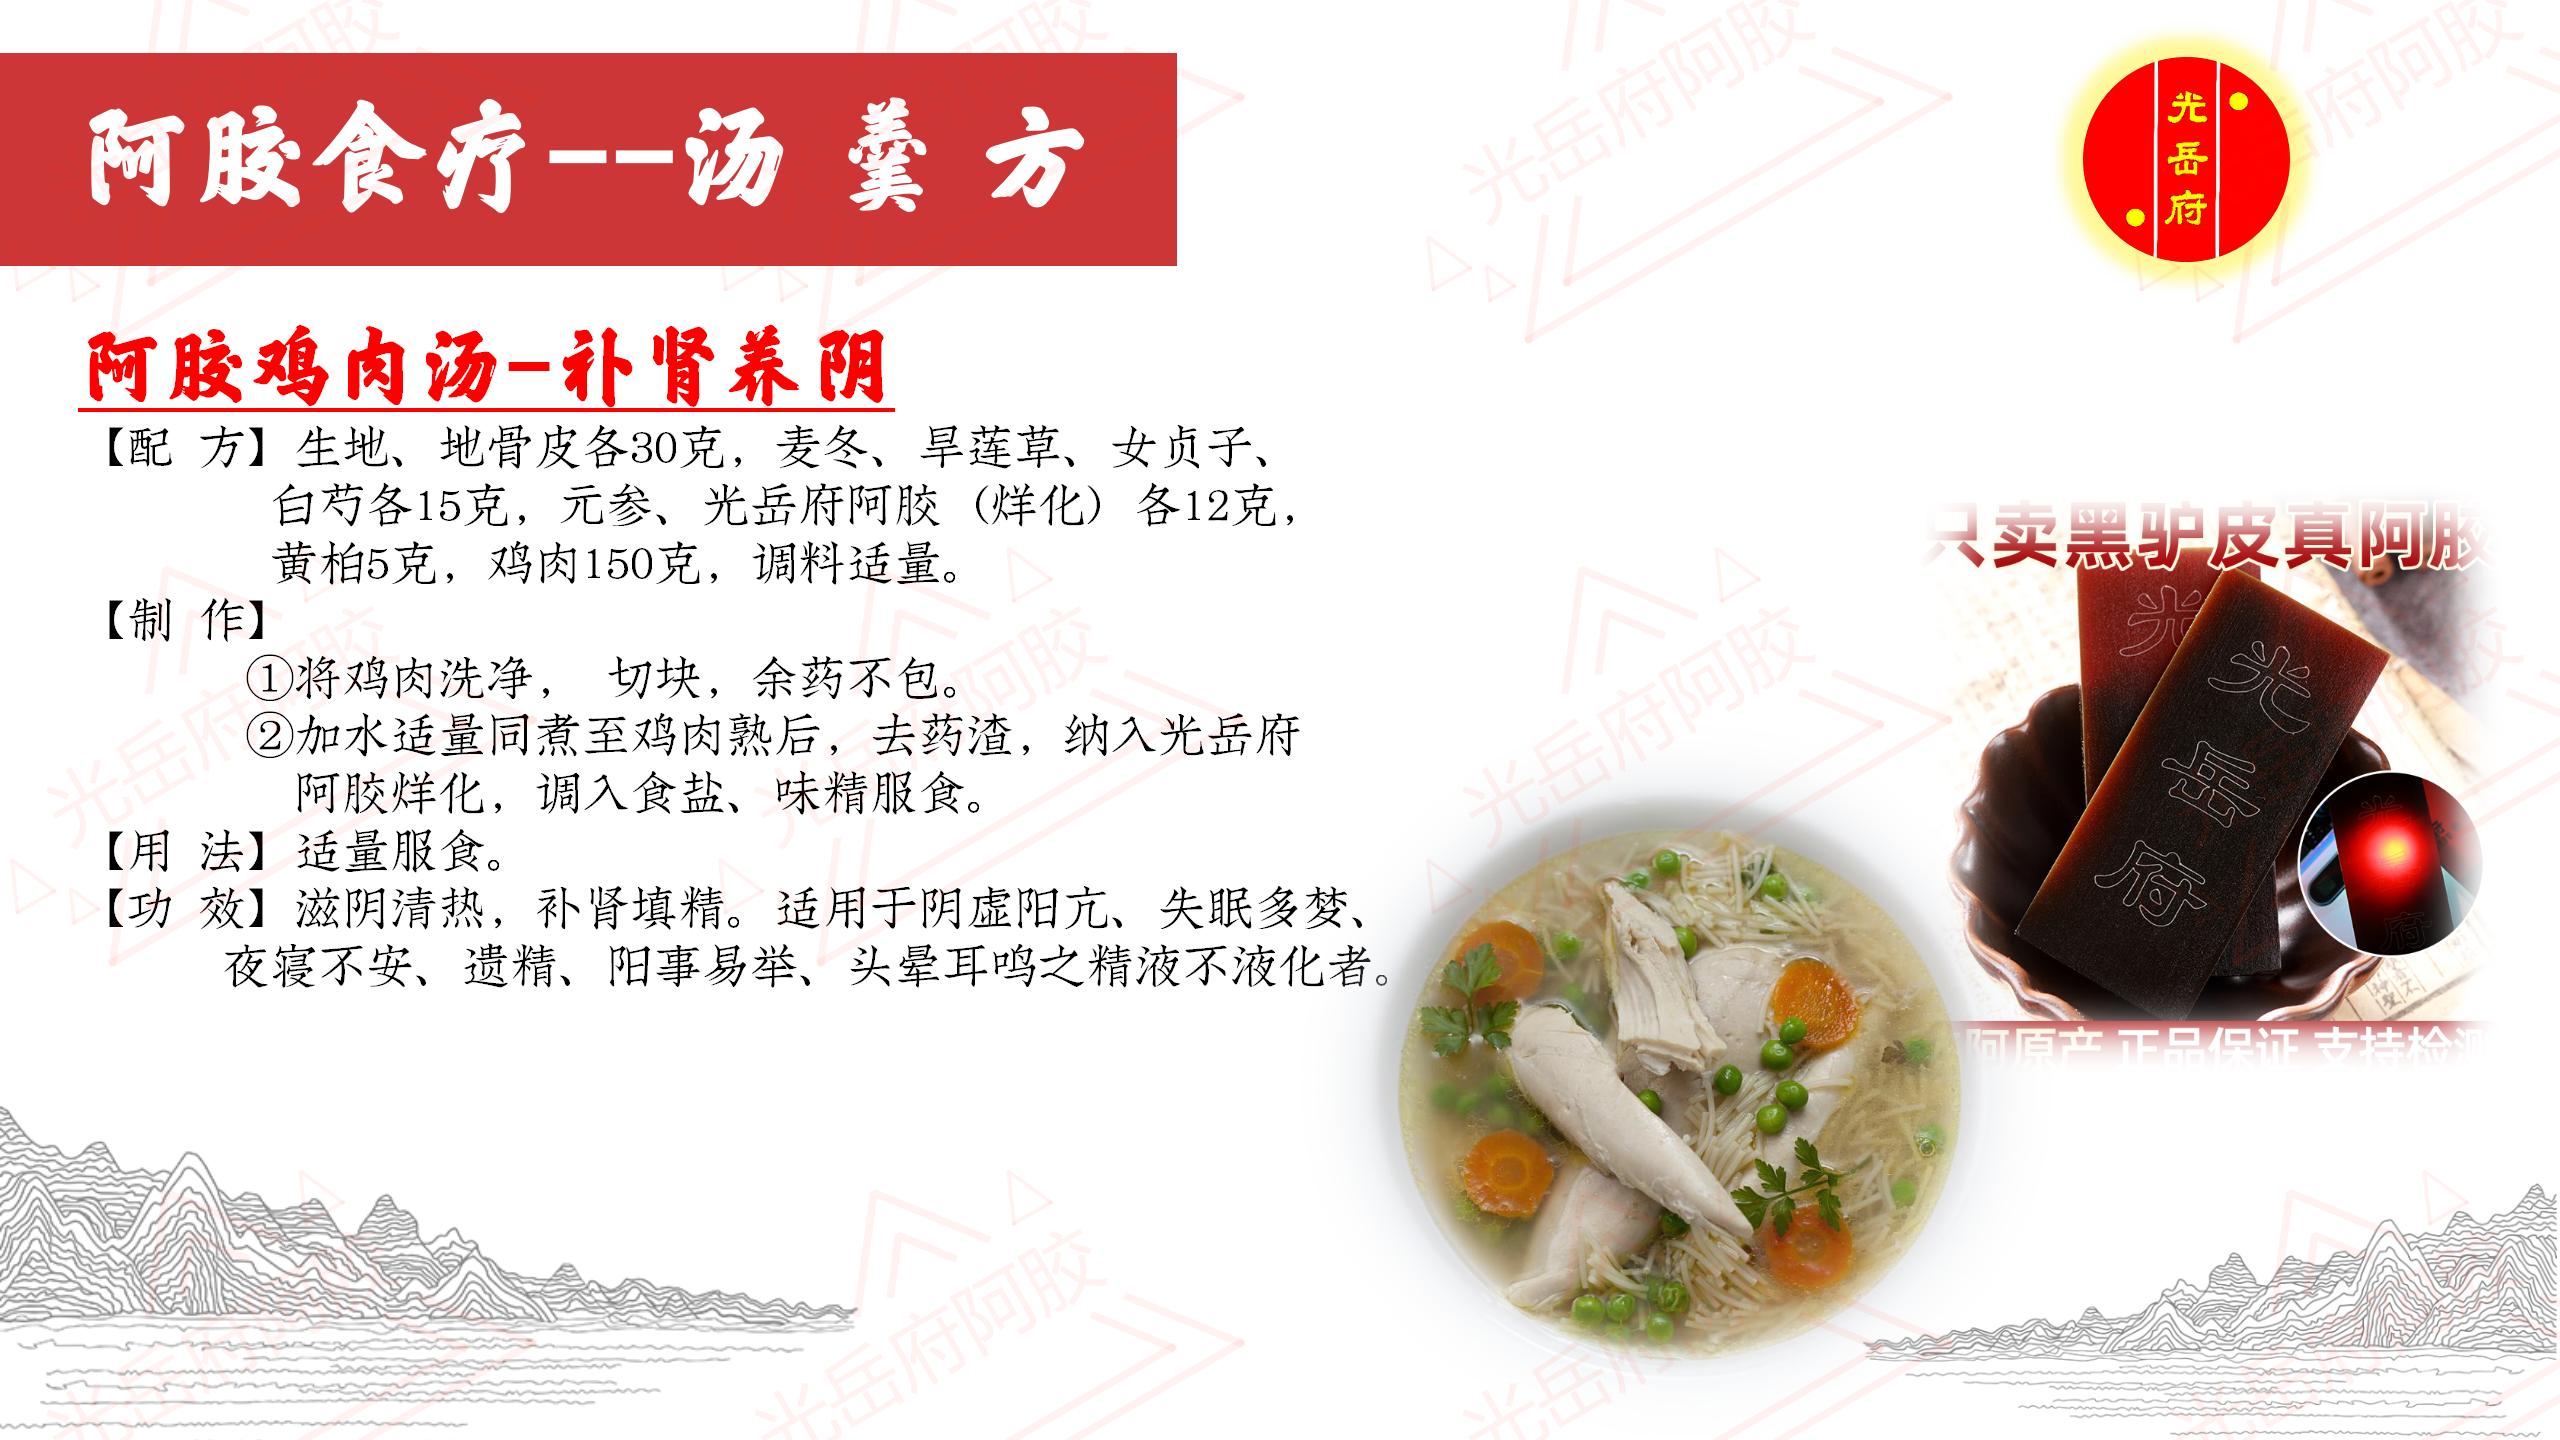 海参鱼胶瘦肉汤，适合当月子餐、孕妇滋补，低脂肪丰富胶原蛋白 | 干海参网